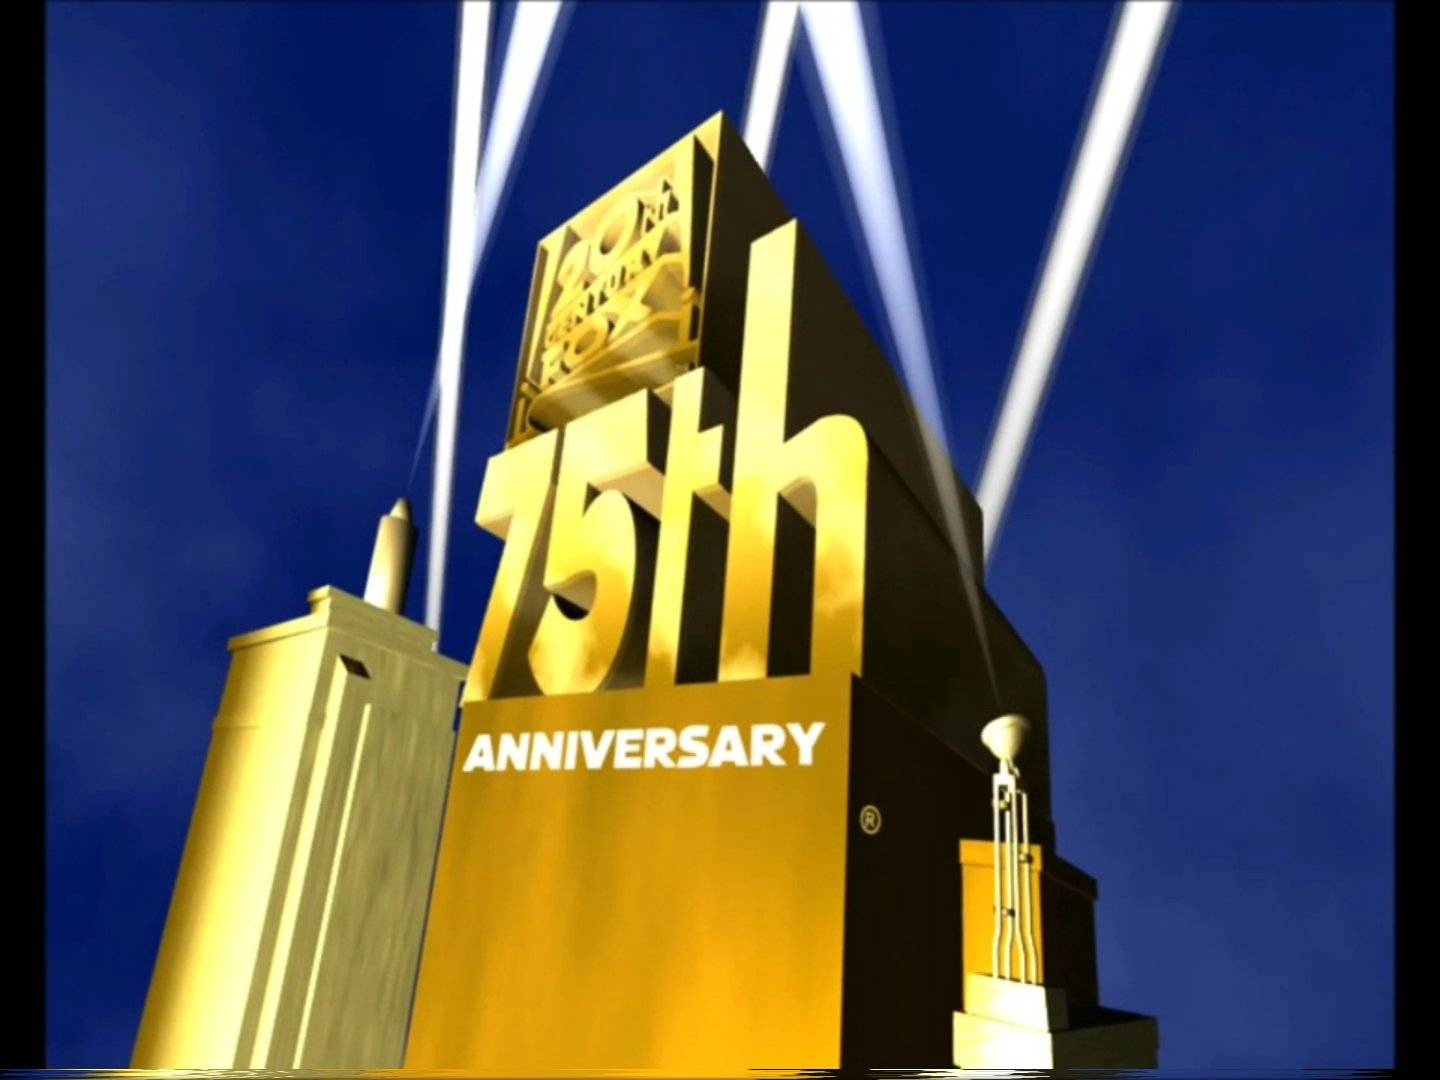 20th Century Fox 1994 logo (RARE CGI PROTOTYPE) - video Dailymotion